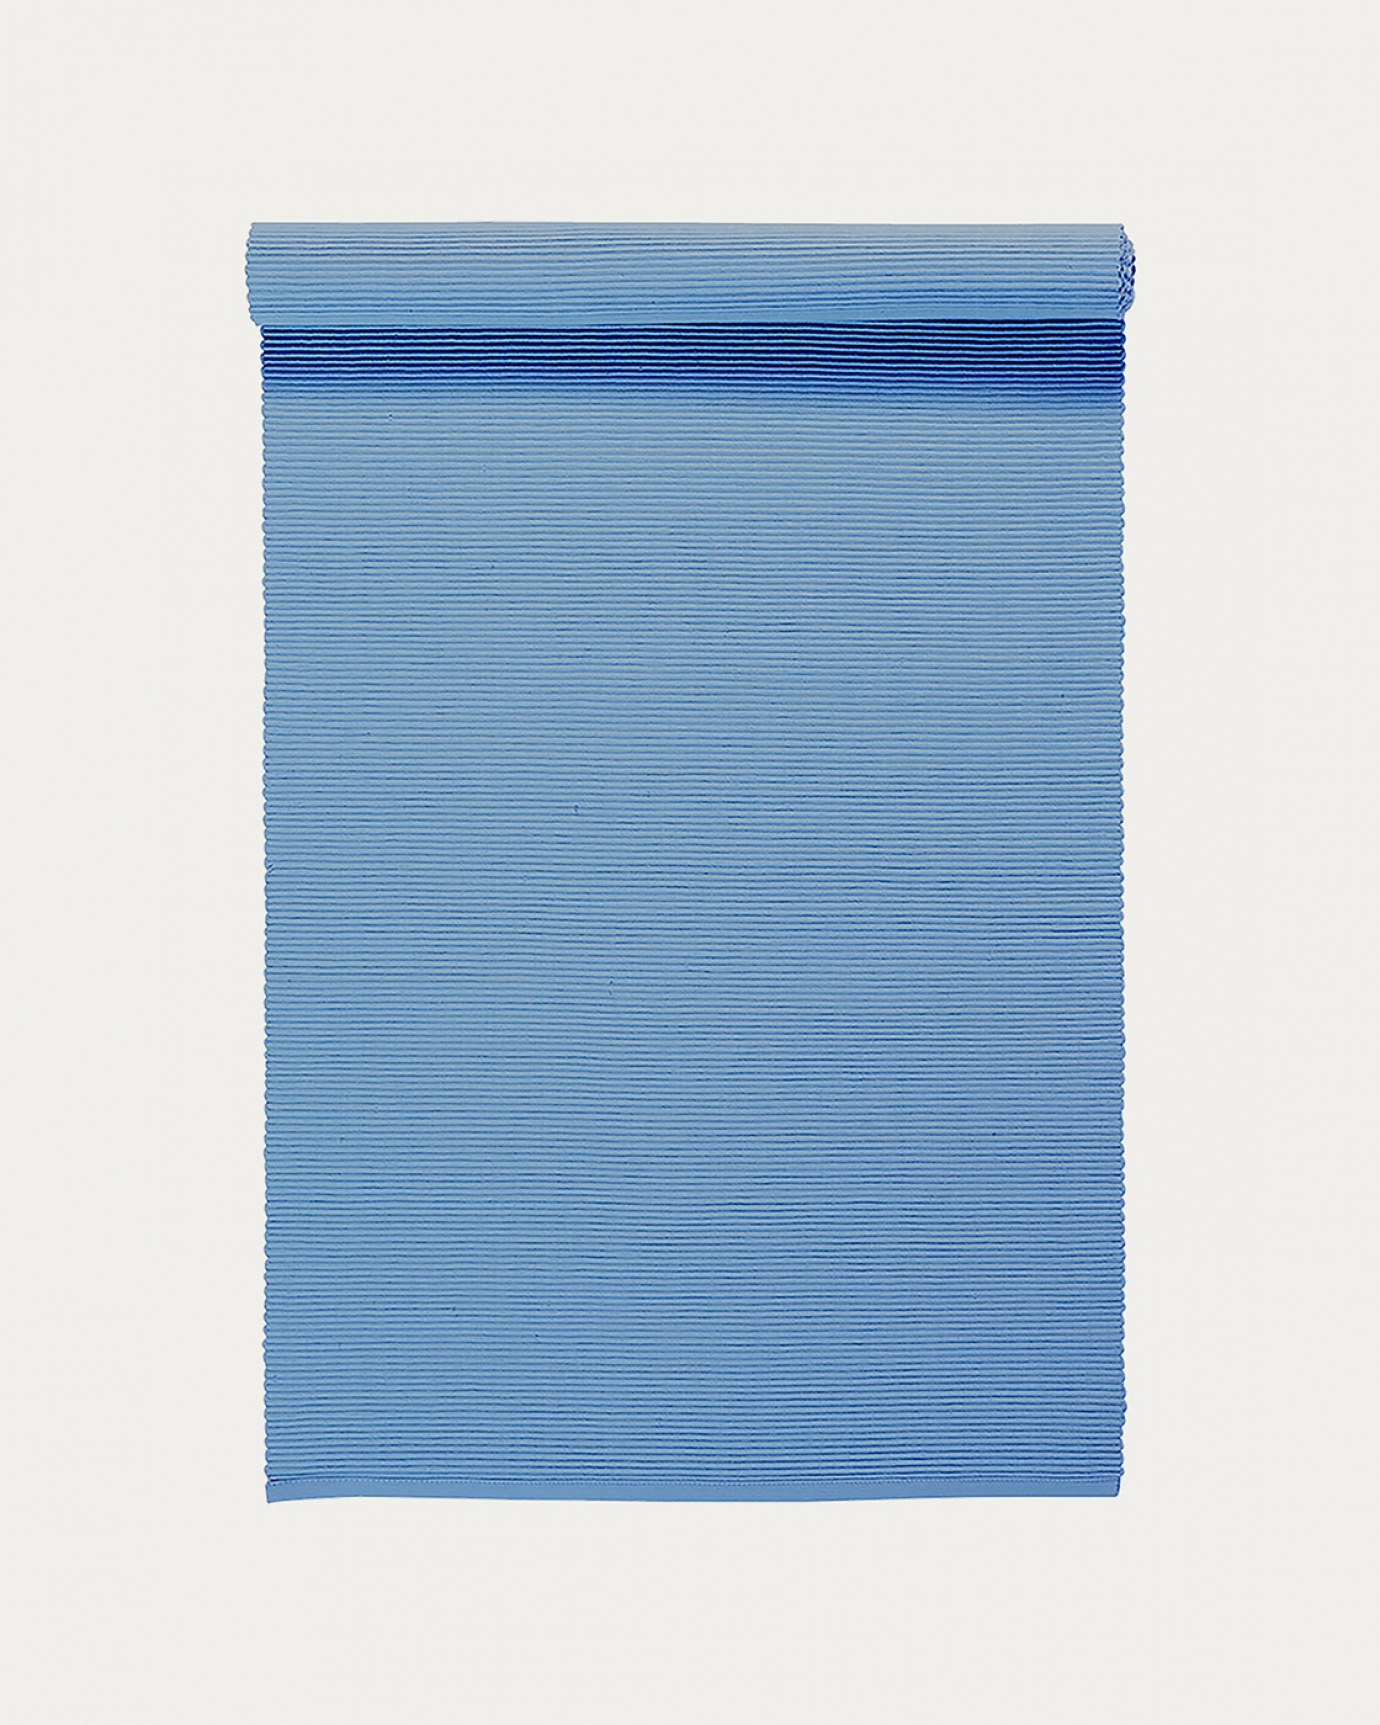 Produktbild helles donnerblau UNI Tischläufer aus weicher Baumwolle in Rippenqualität von LINUM DESIGN. Größe 45x150 cm.